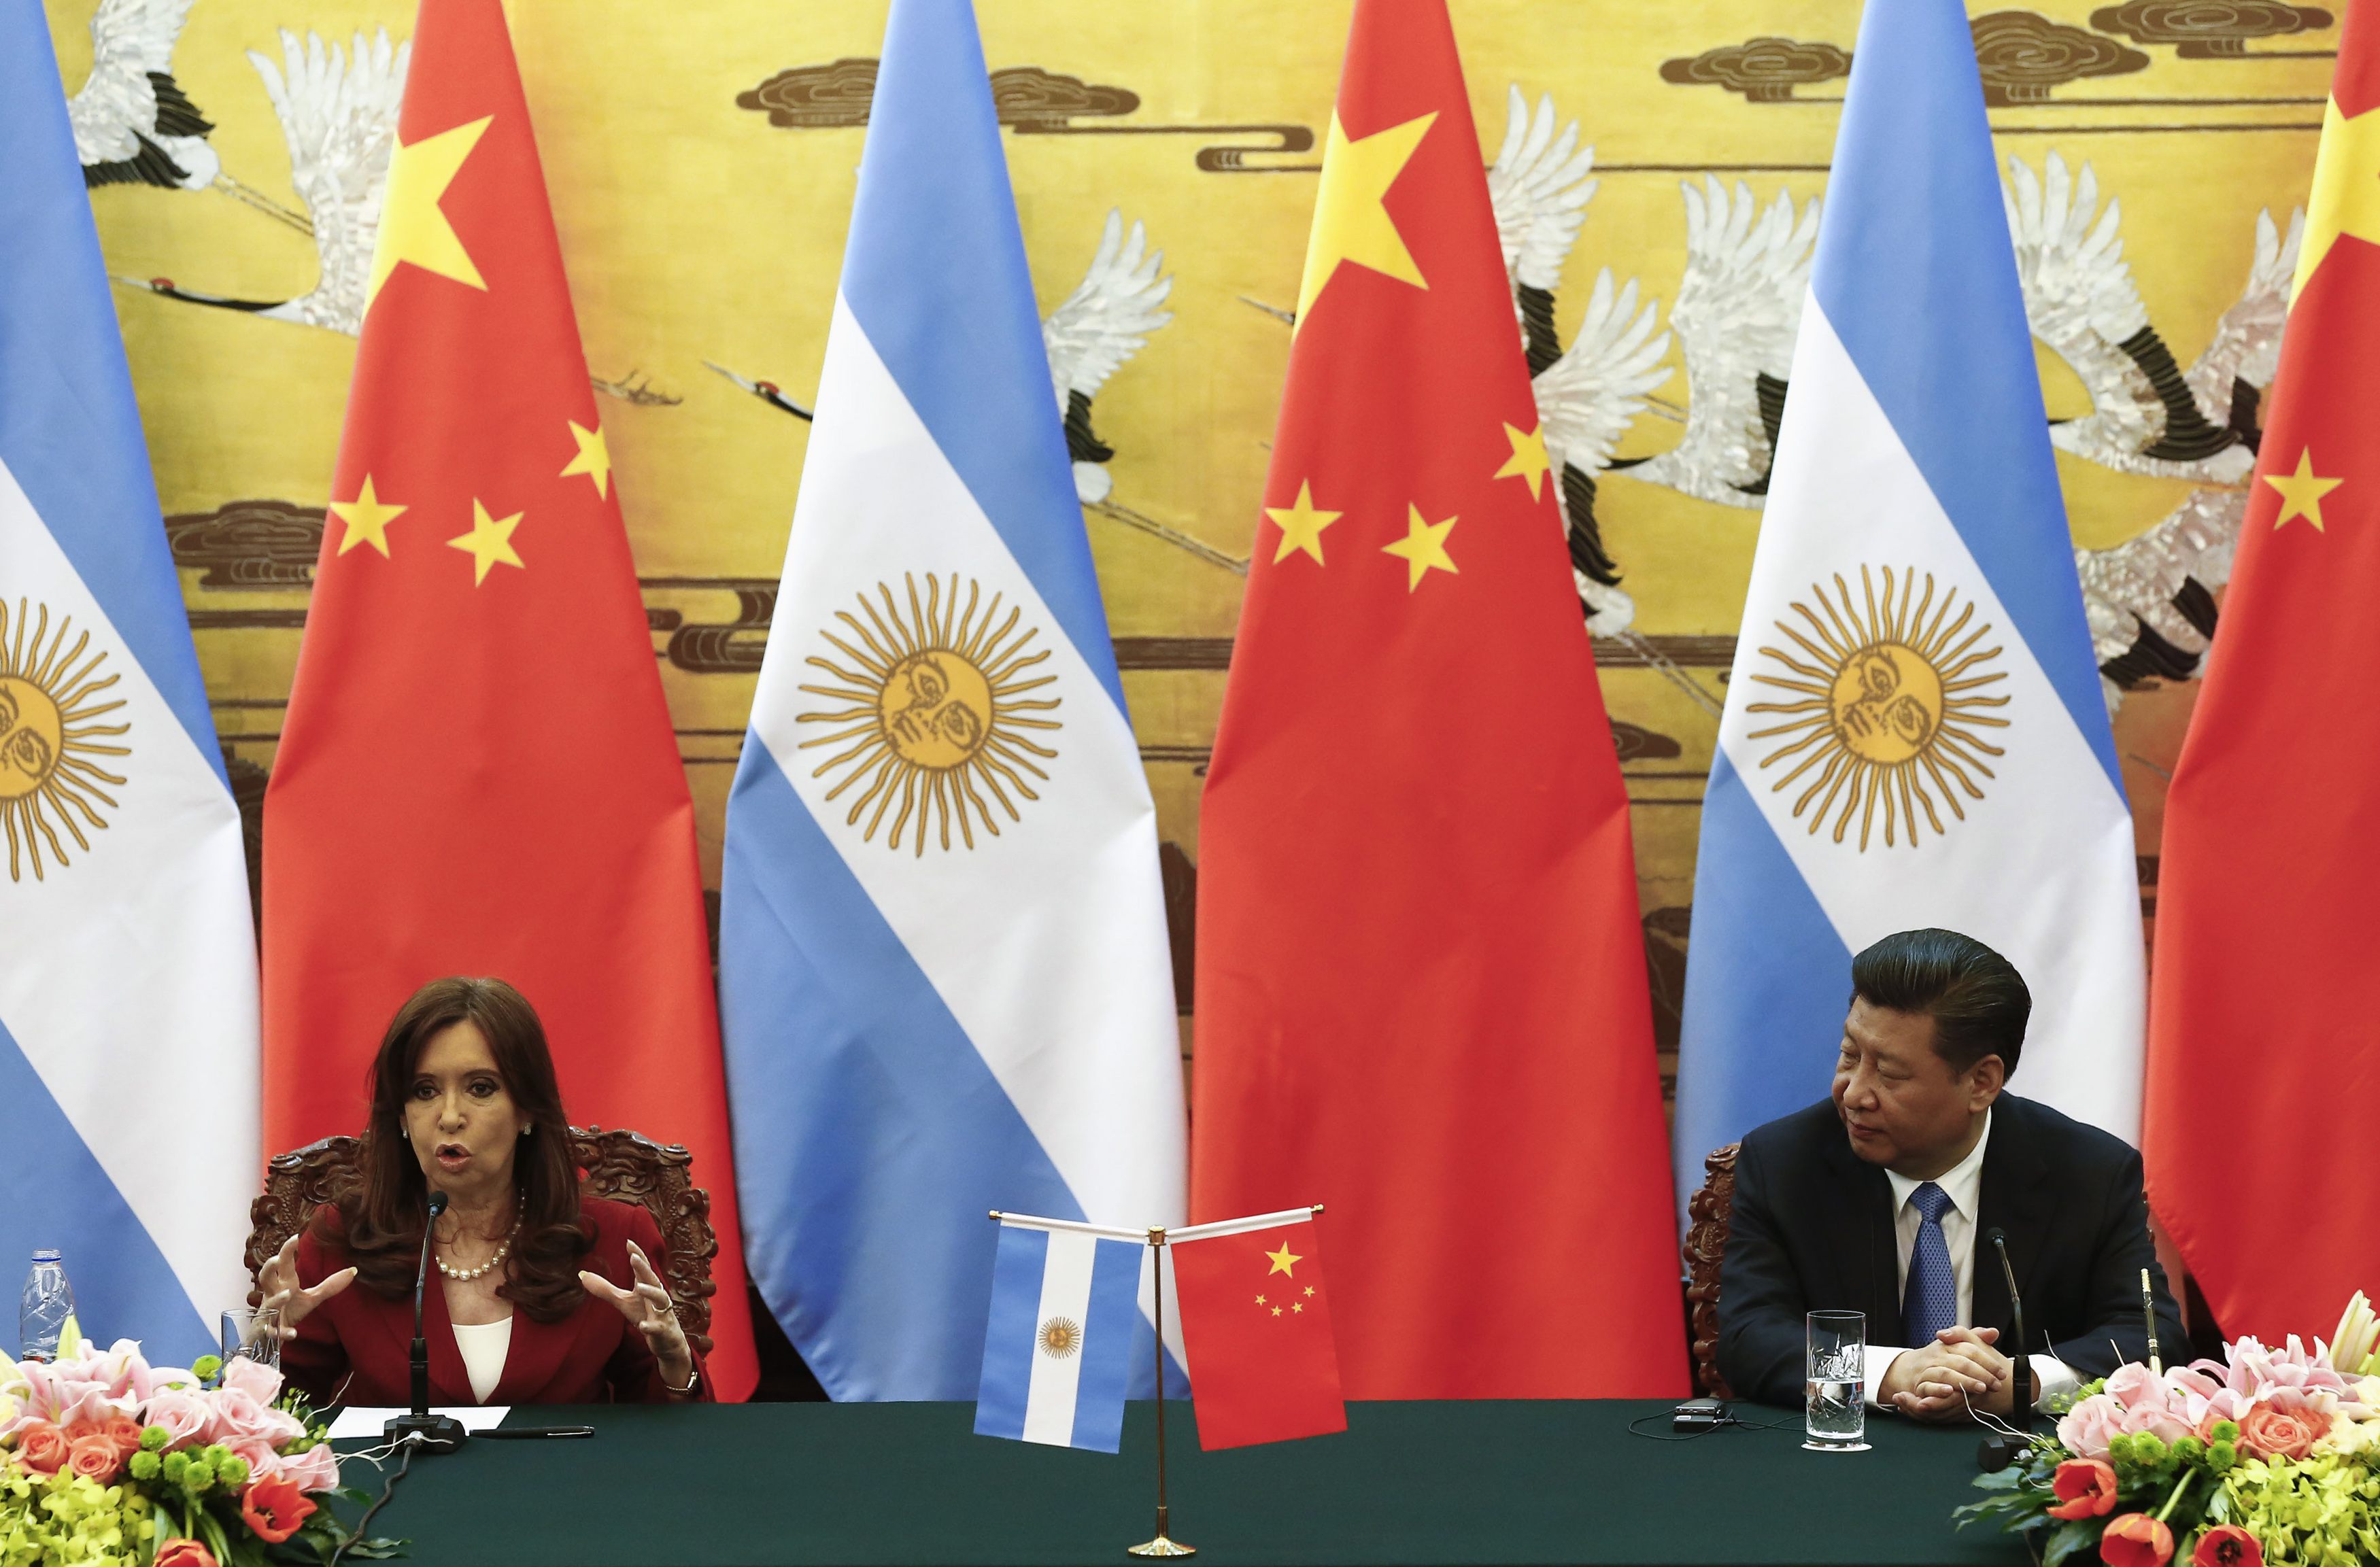 Cristina Kirchner se centra en acuerdos con China durante gira, en medio de escándalo